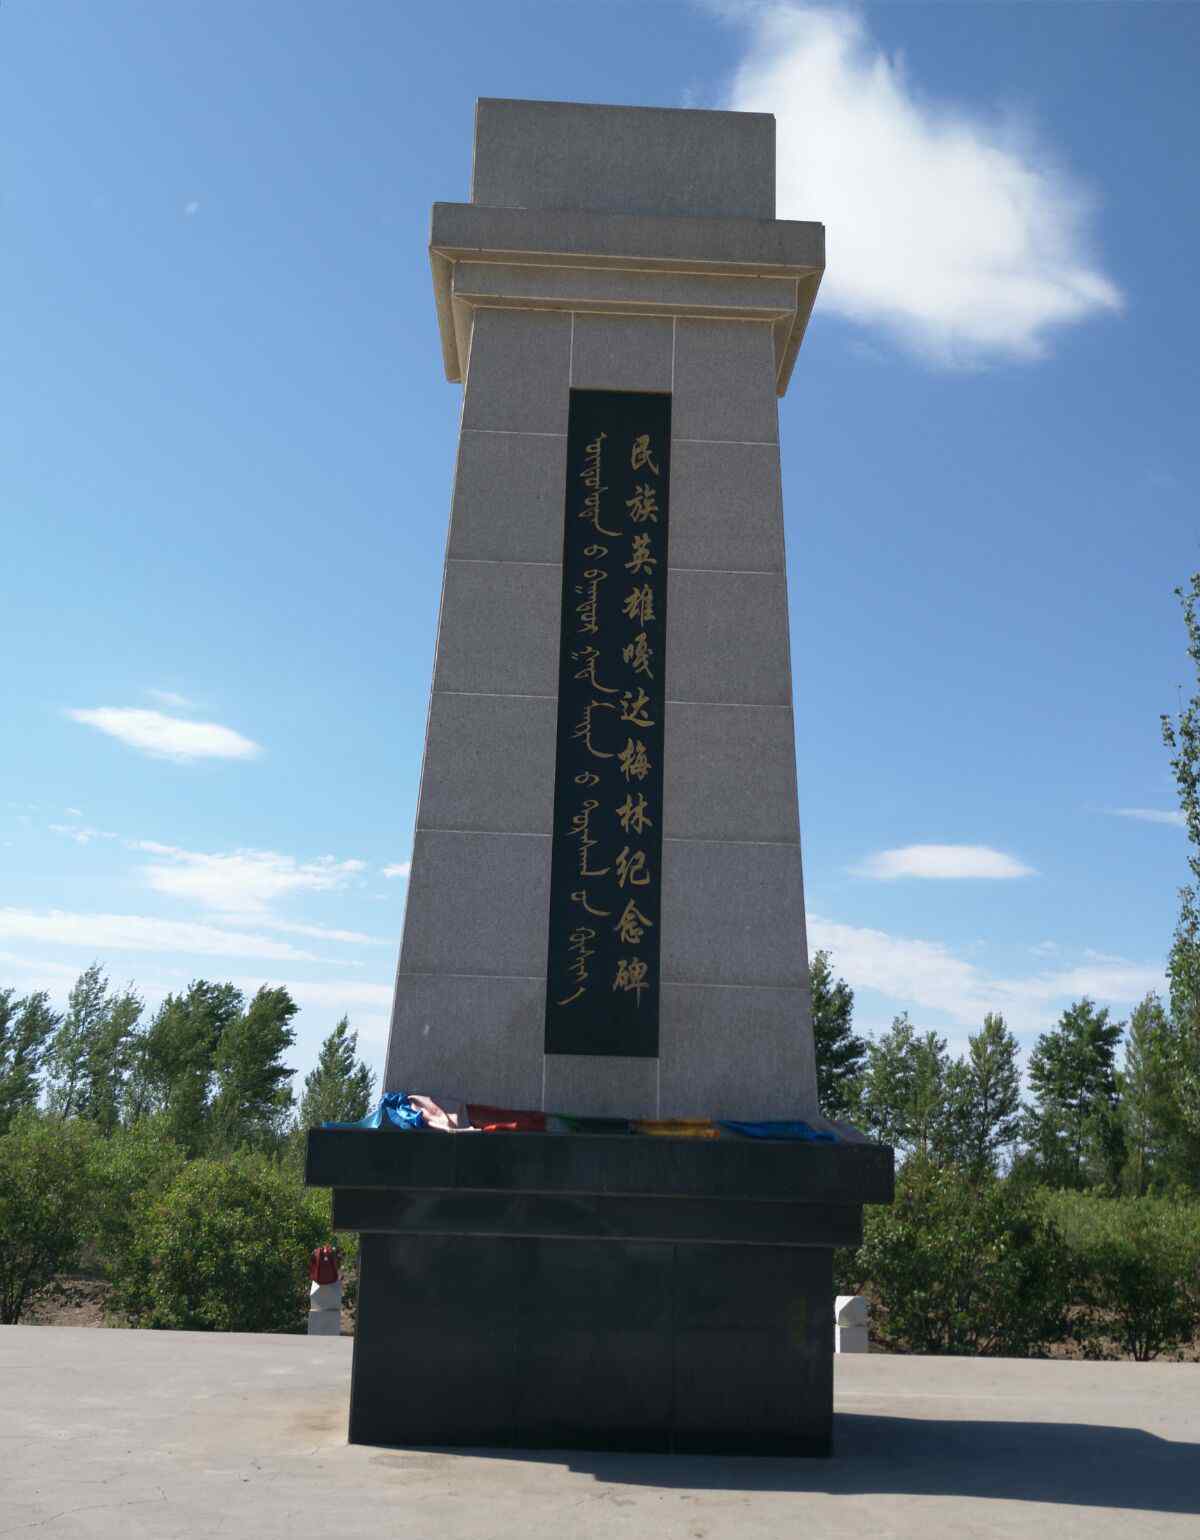 嘎达梅林是哪个民族 蒙古民族的英雄-嘎达梅林